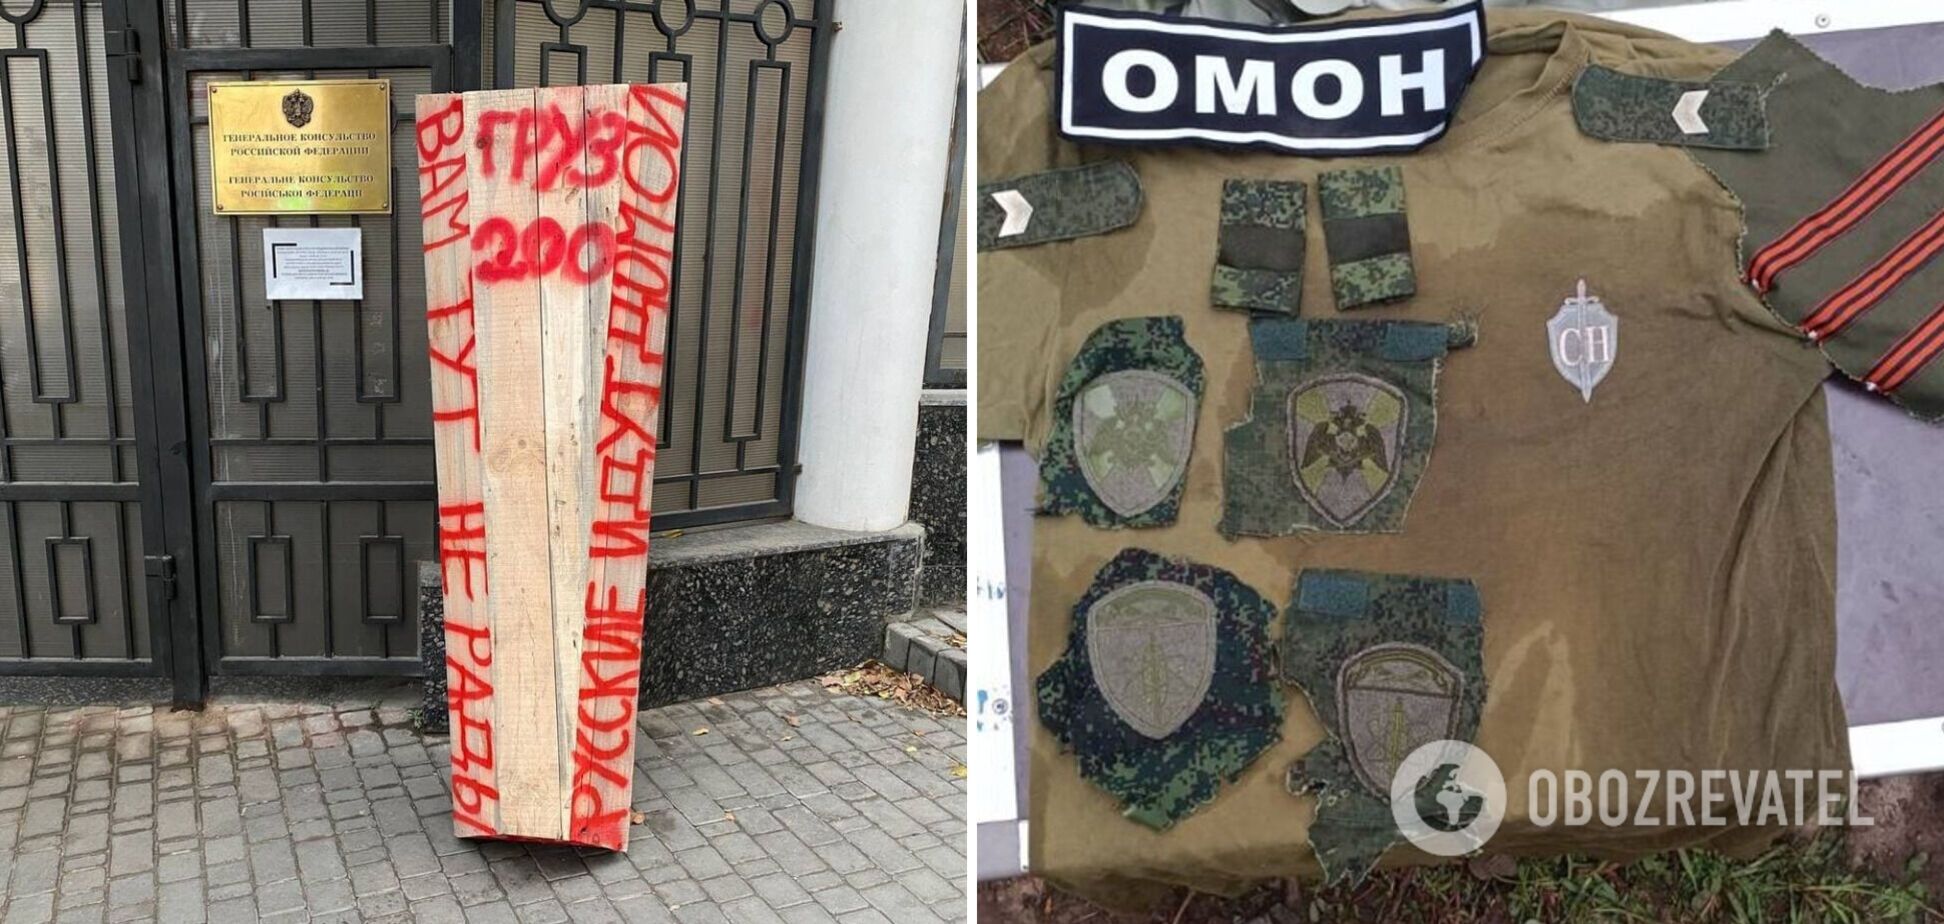 'Критично не вистачає гарматного м’яса?' В Україні знайшли шеврони, які в РФ носять охоронці атомних станцій. Фото 